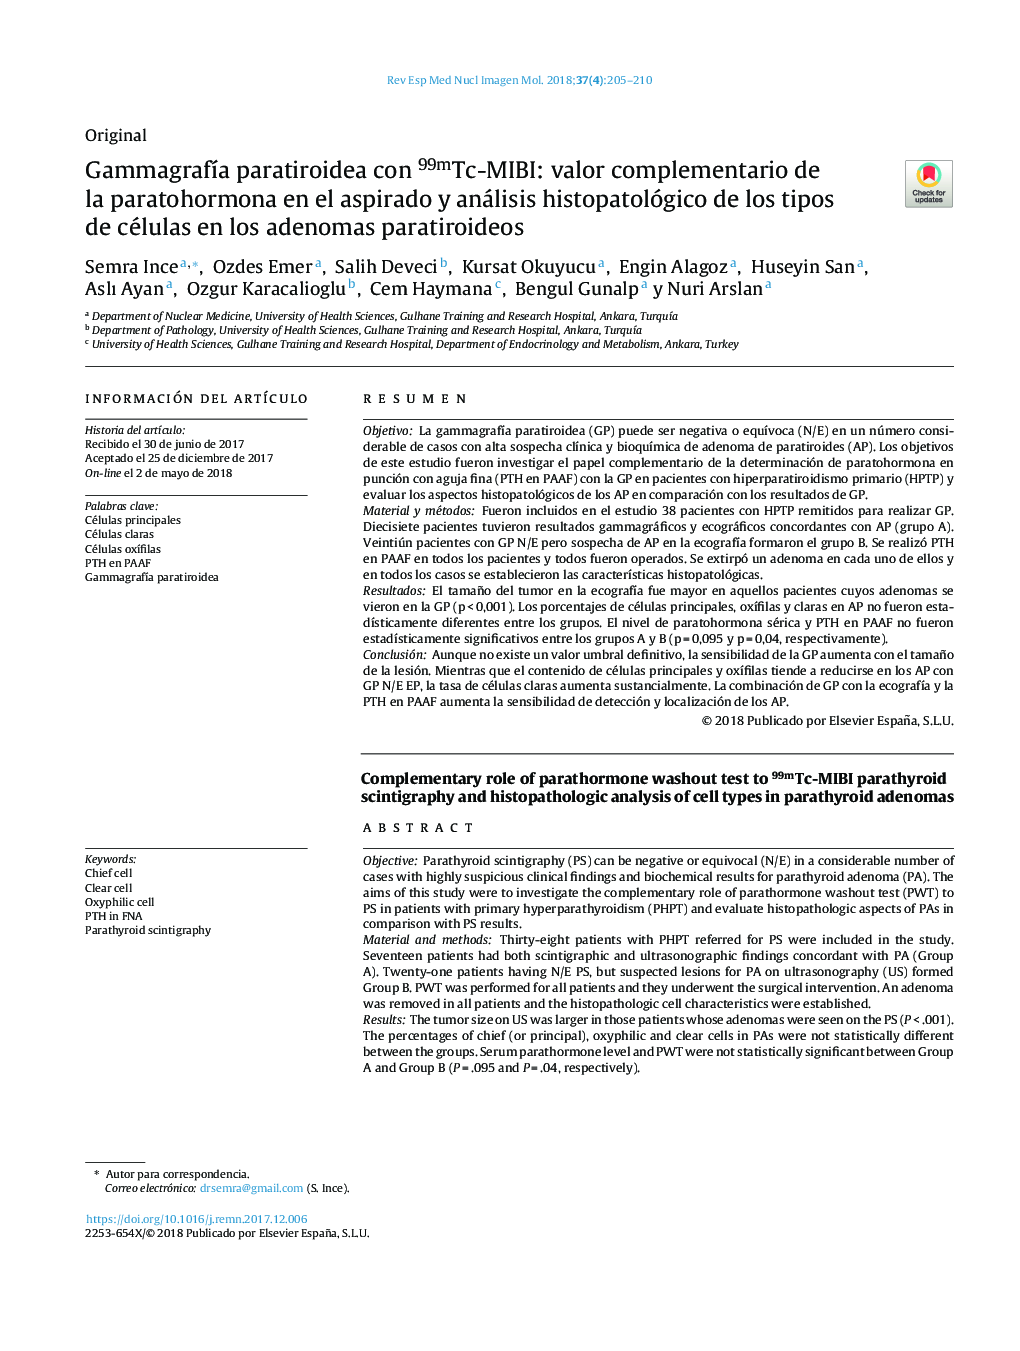 GammagrafÃ­a paratiroidea con 99mTc-MIBI: valor complementario de la paratohormona en el aspirado y análisis histopatológico de los tipos de células en los adenomas paratiroideos